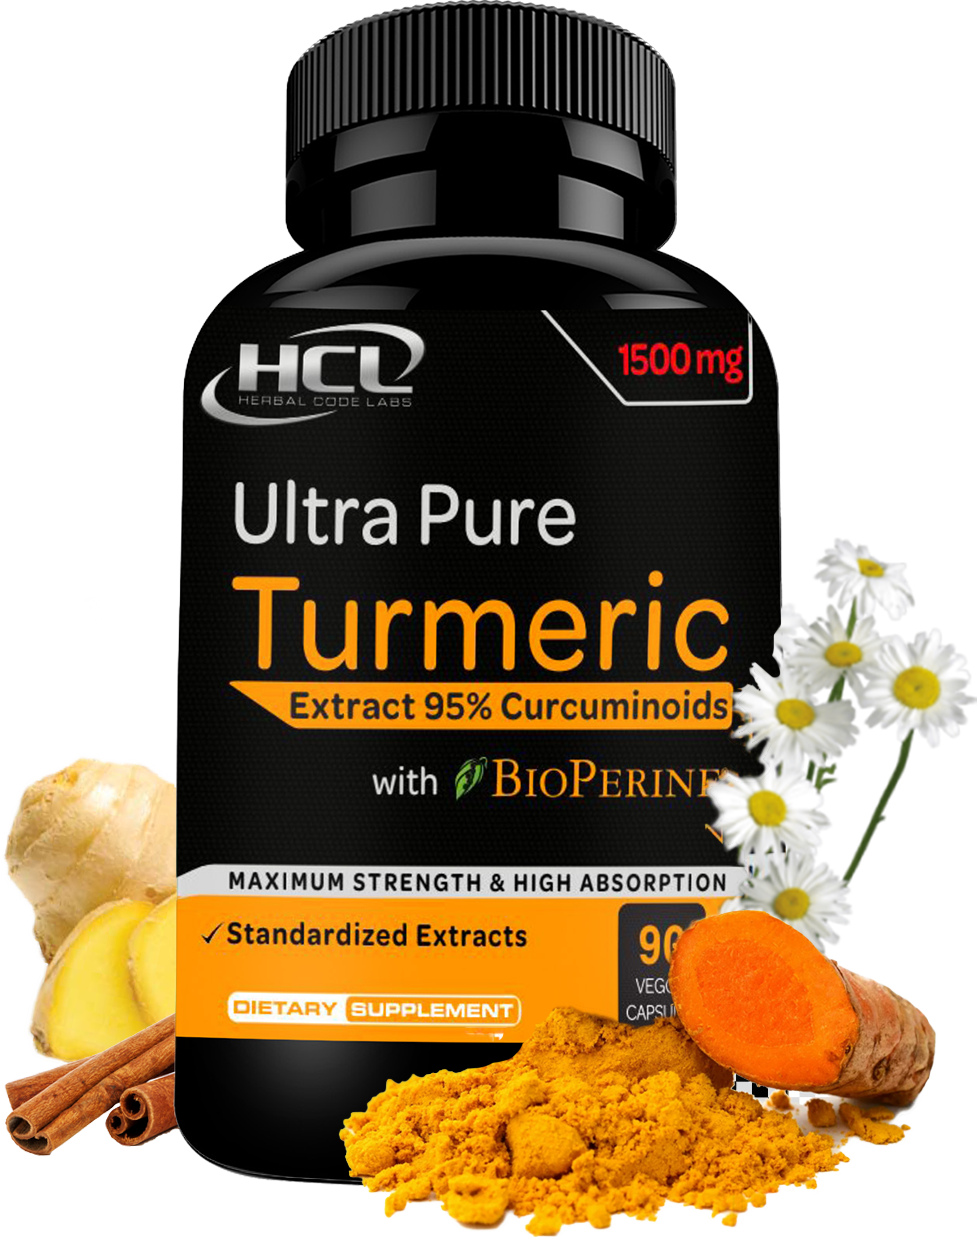 Turmeric Curcumin Extract